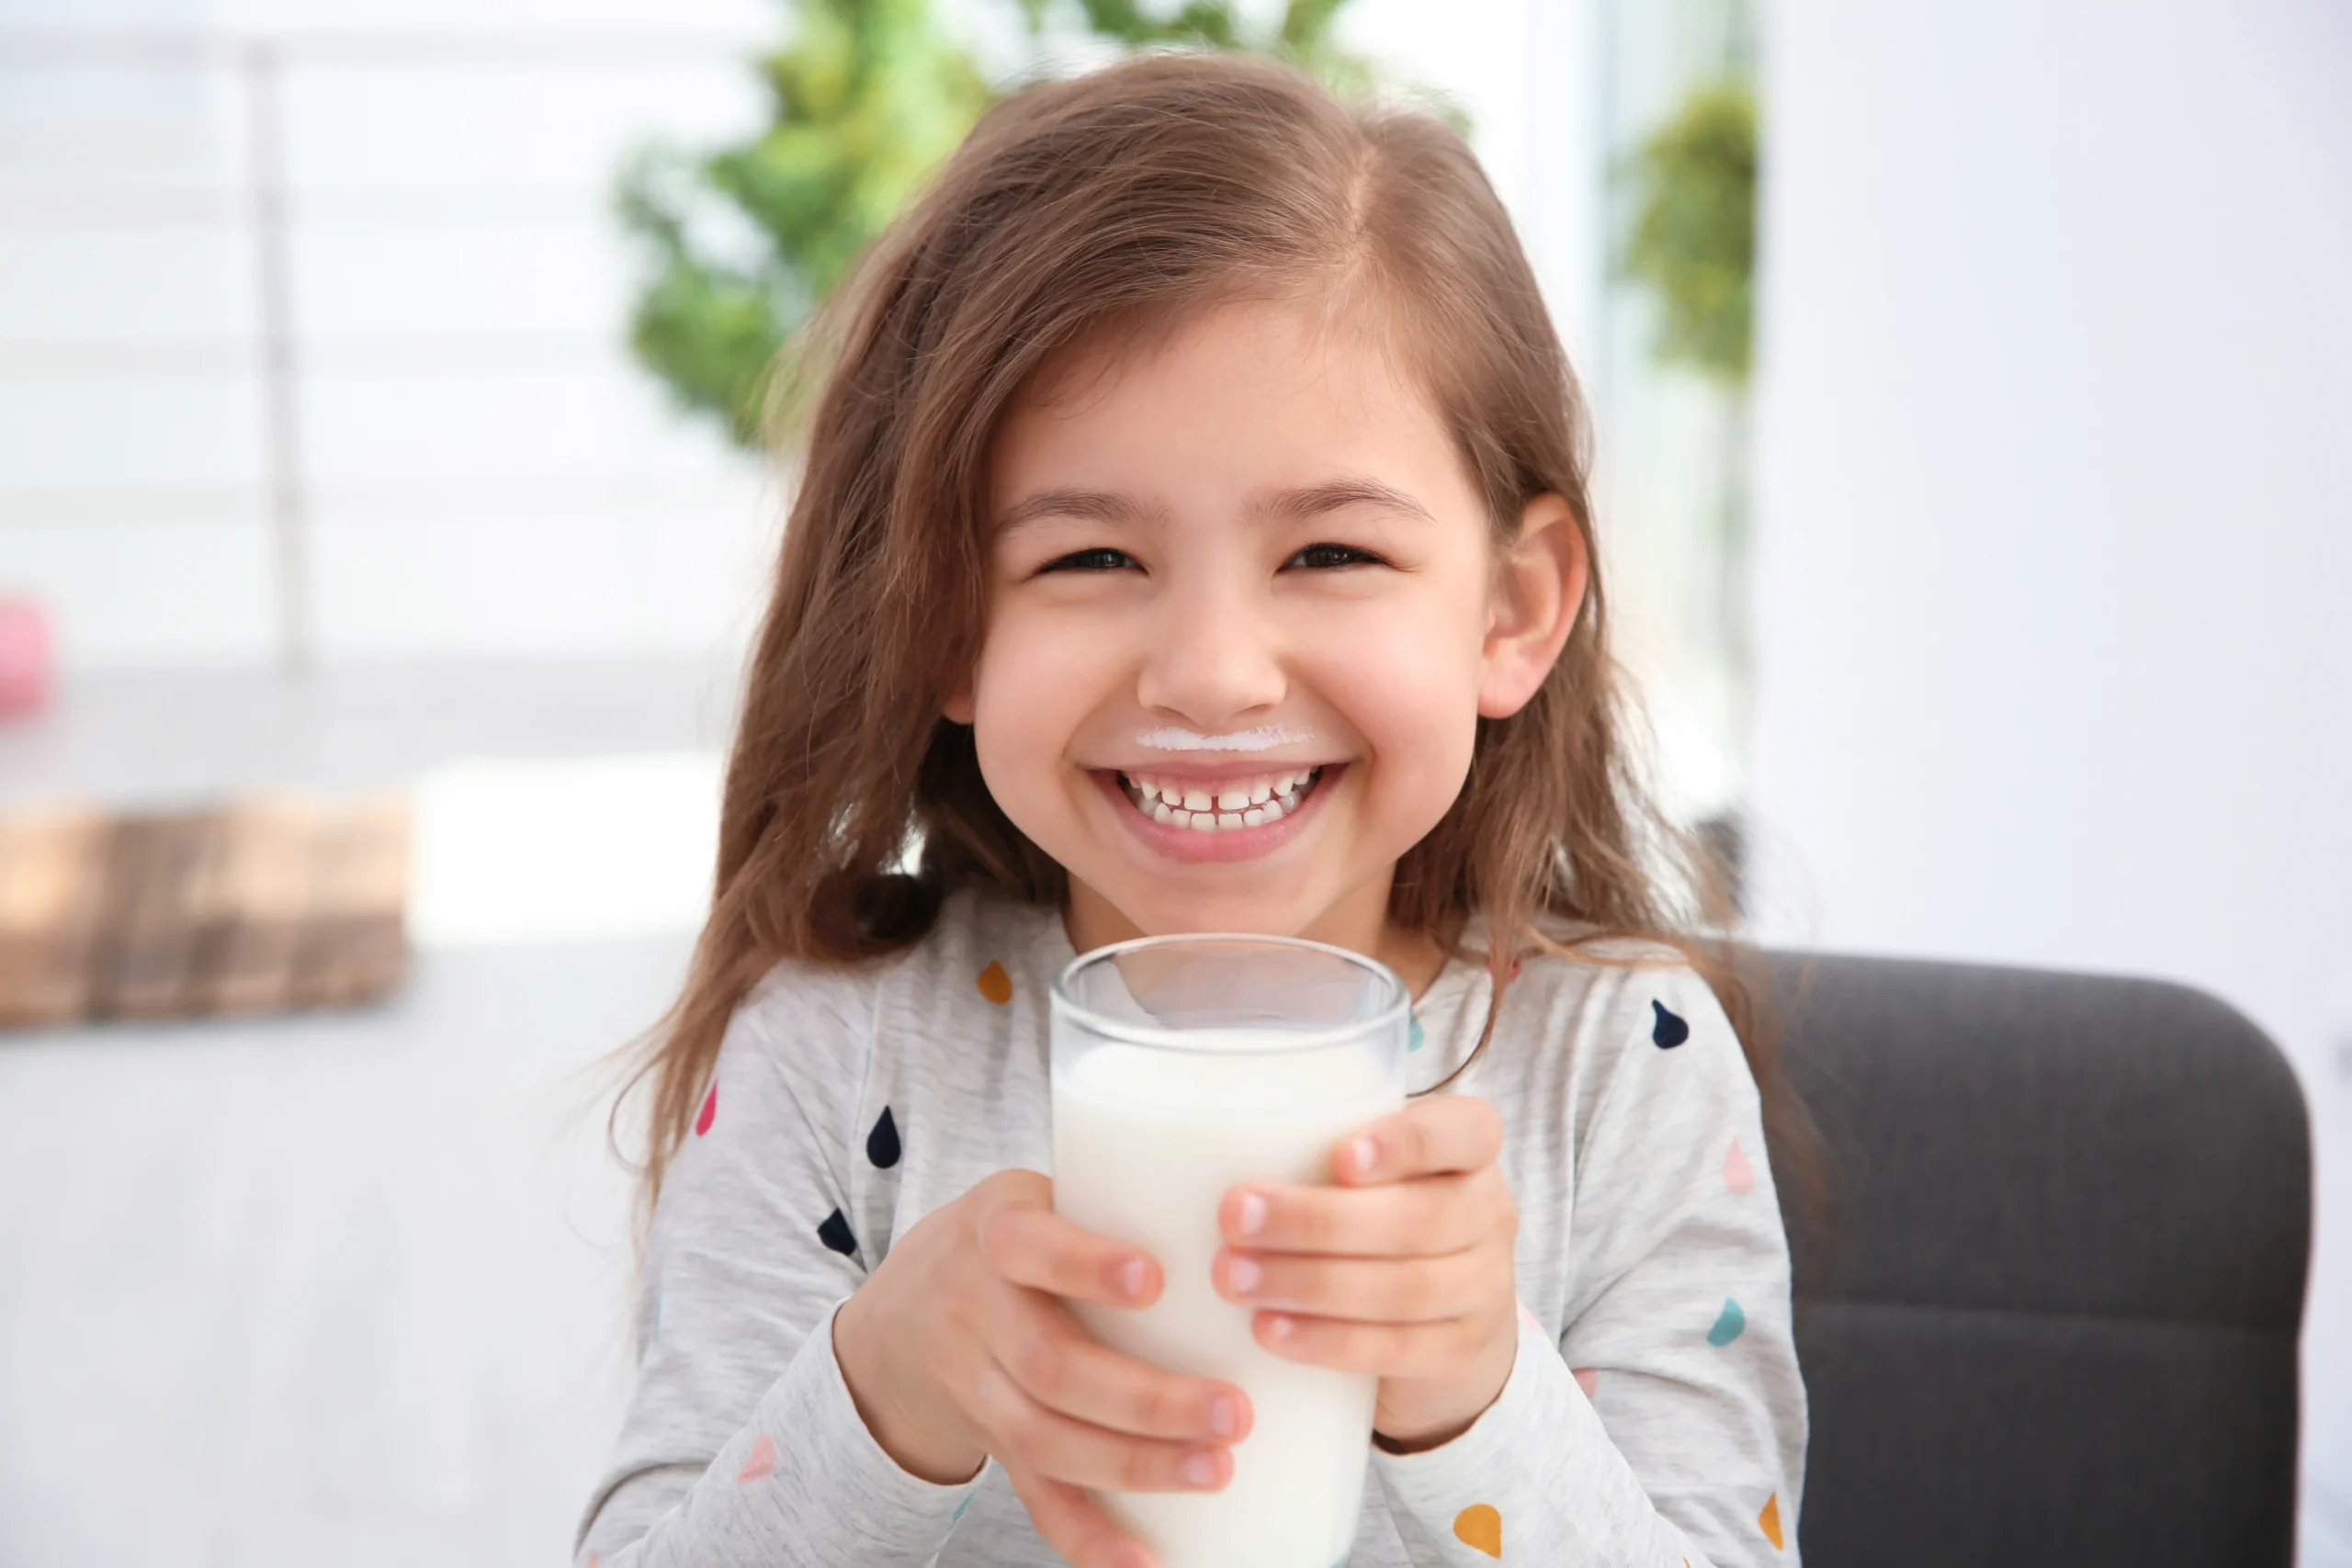 Synbiotyki dla dzieci - kiedy warto je stosować? Mała dziewczynka pije mleko ze szklanki i uśmiecha się do aparatu.